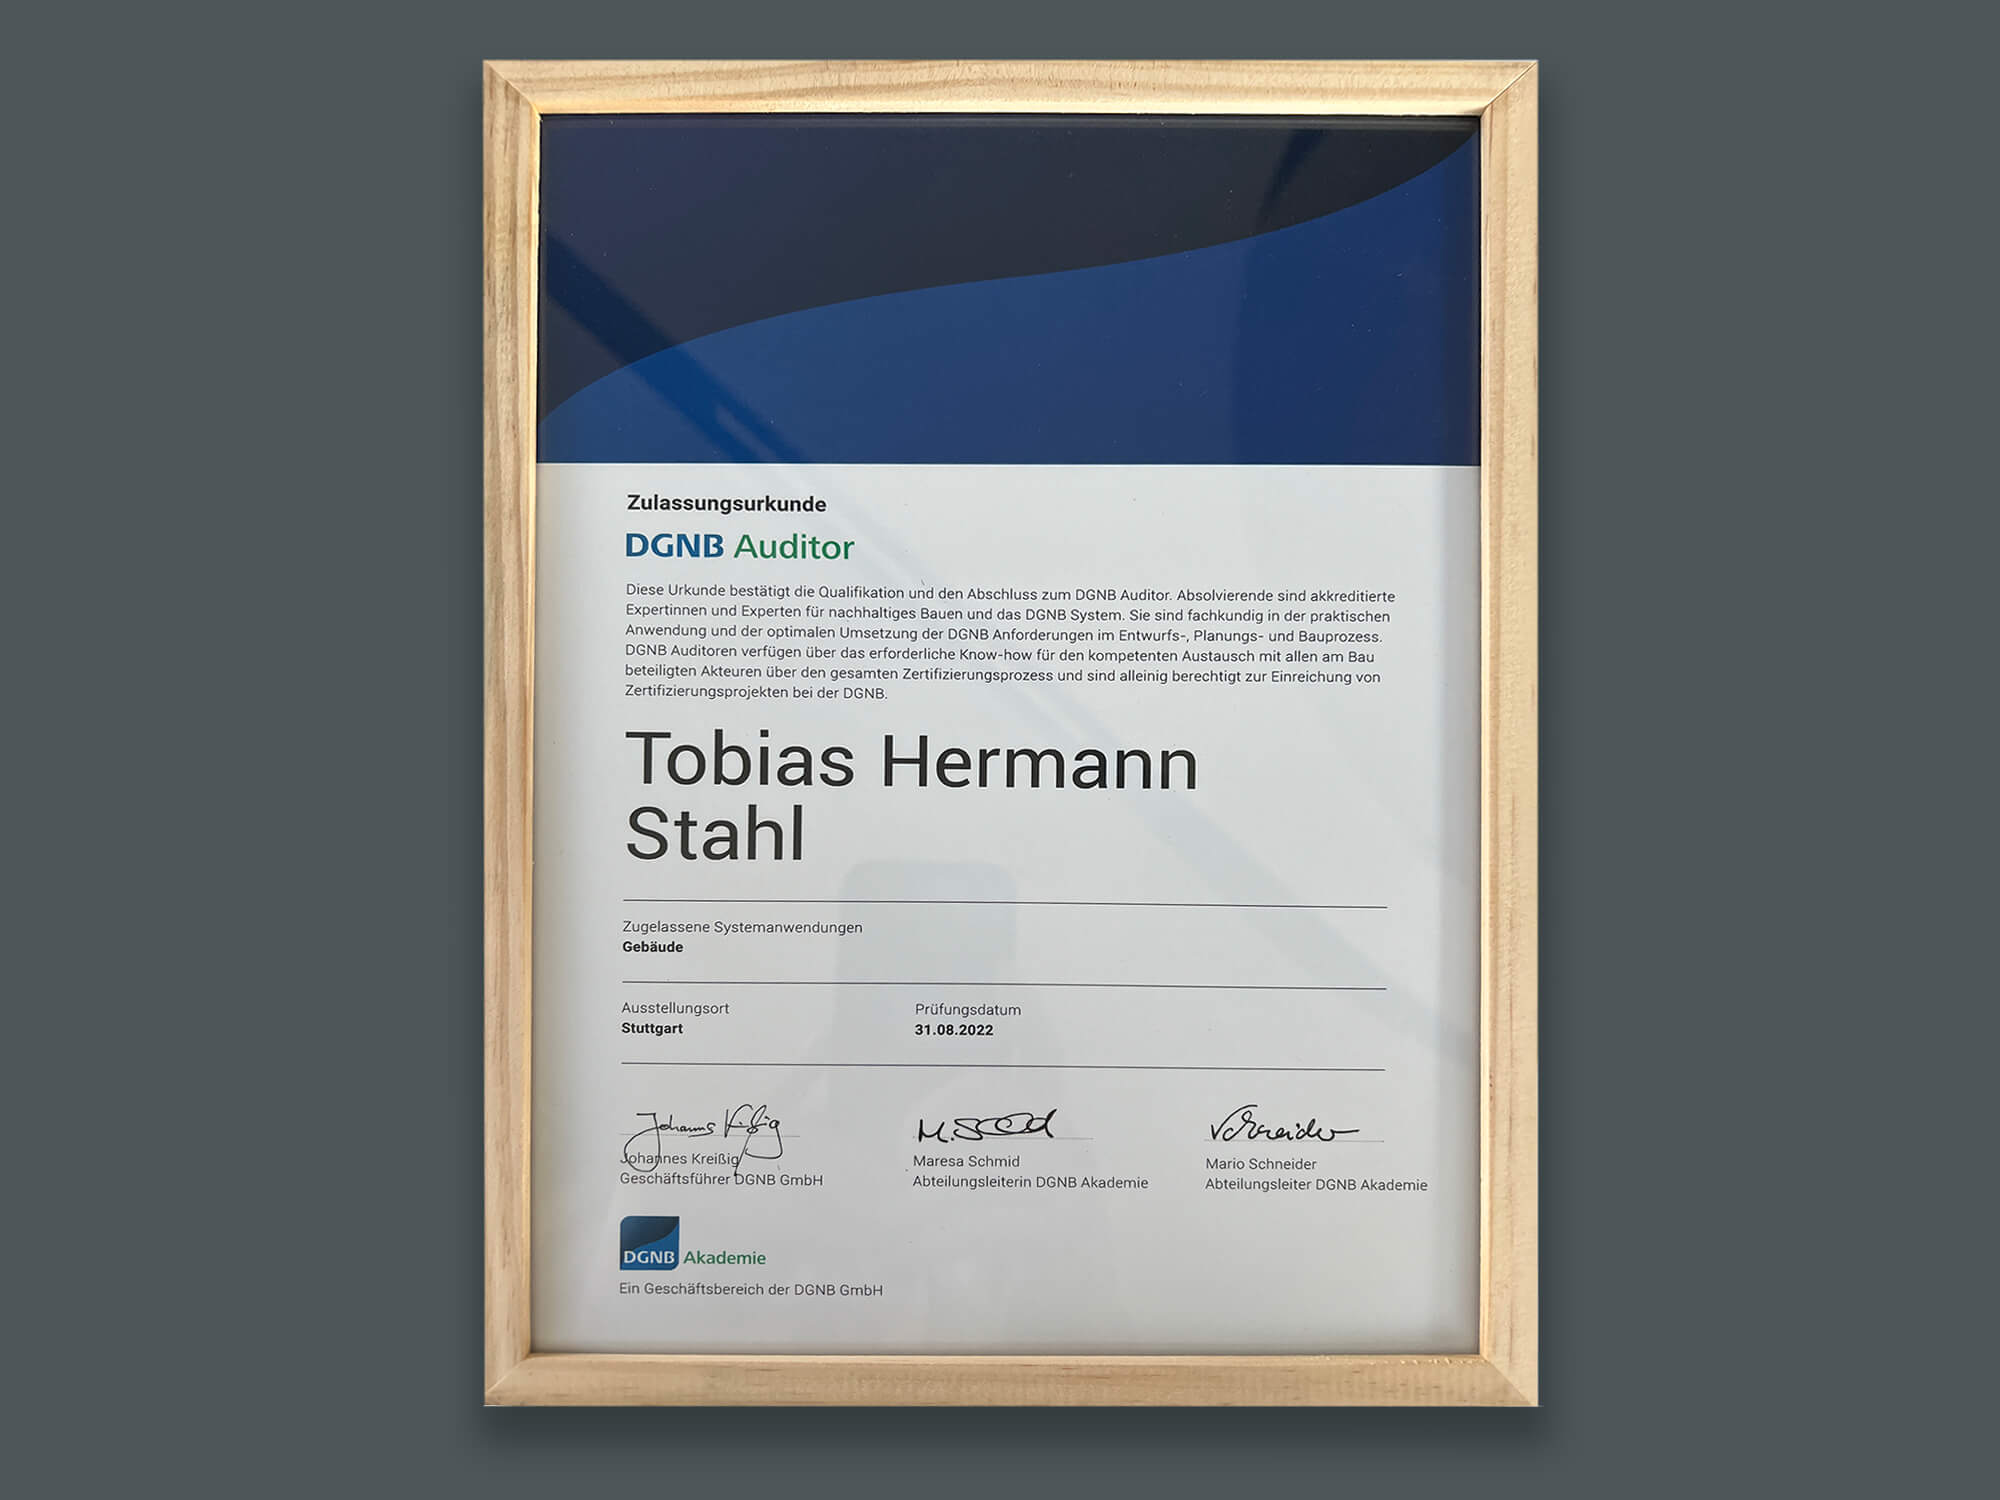 Die Urkunde der DGNB für Tobias Stahl zertifiziert ihn als Auditor für Gebäude